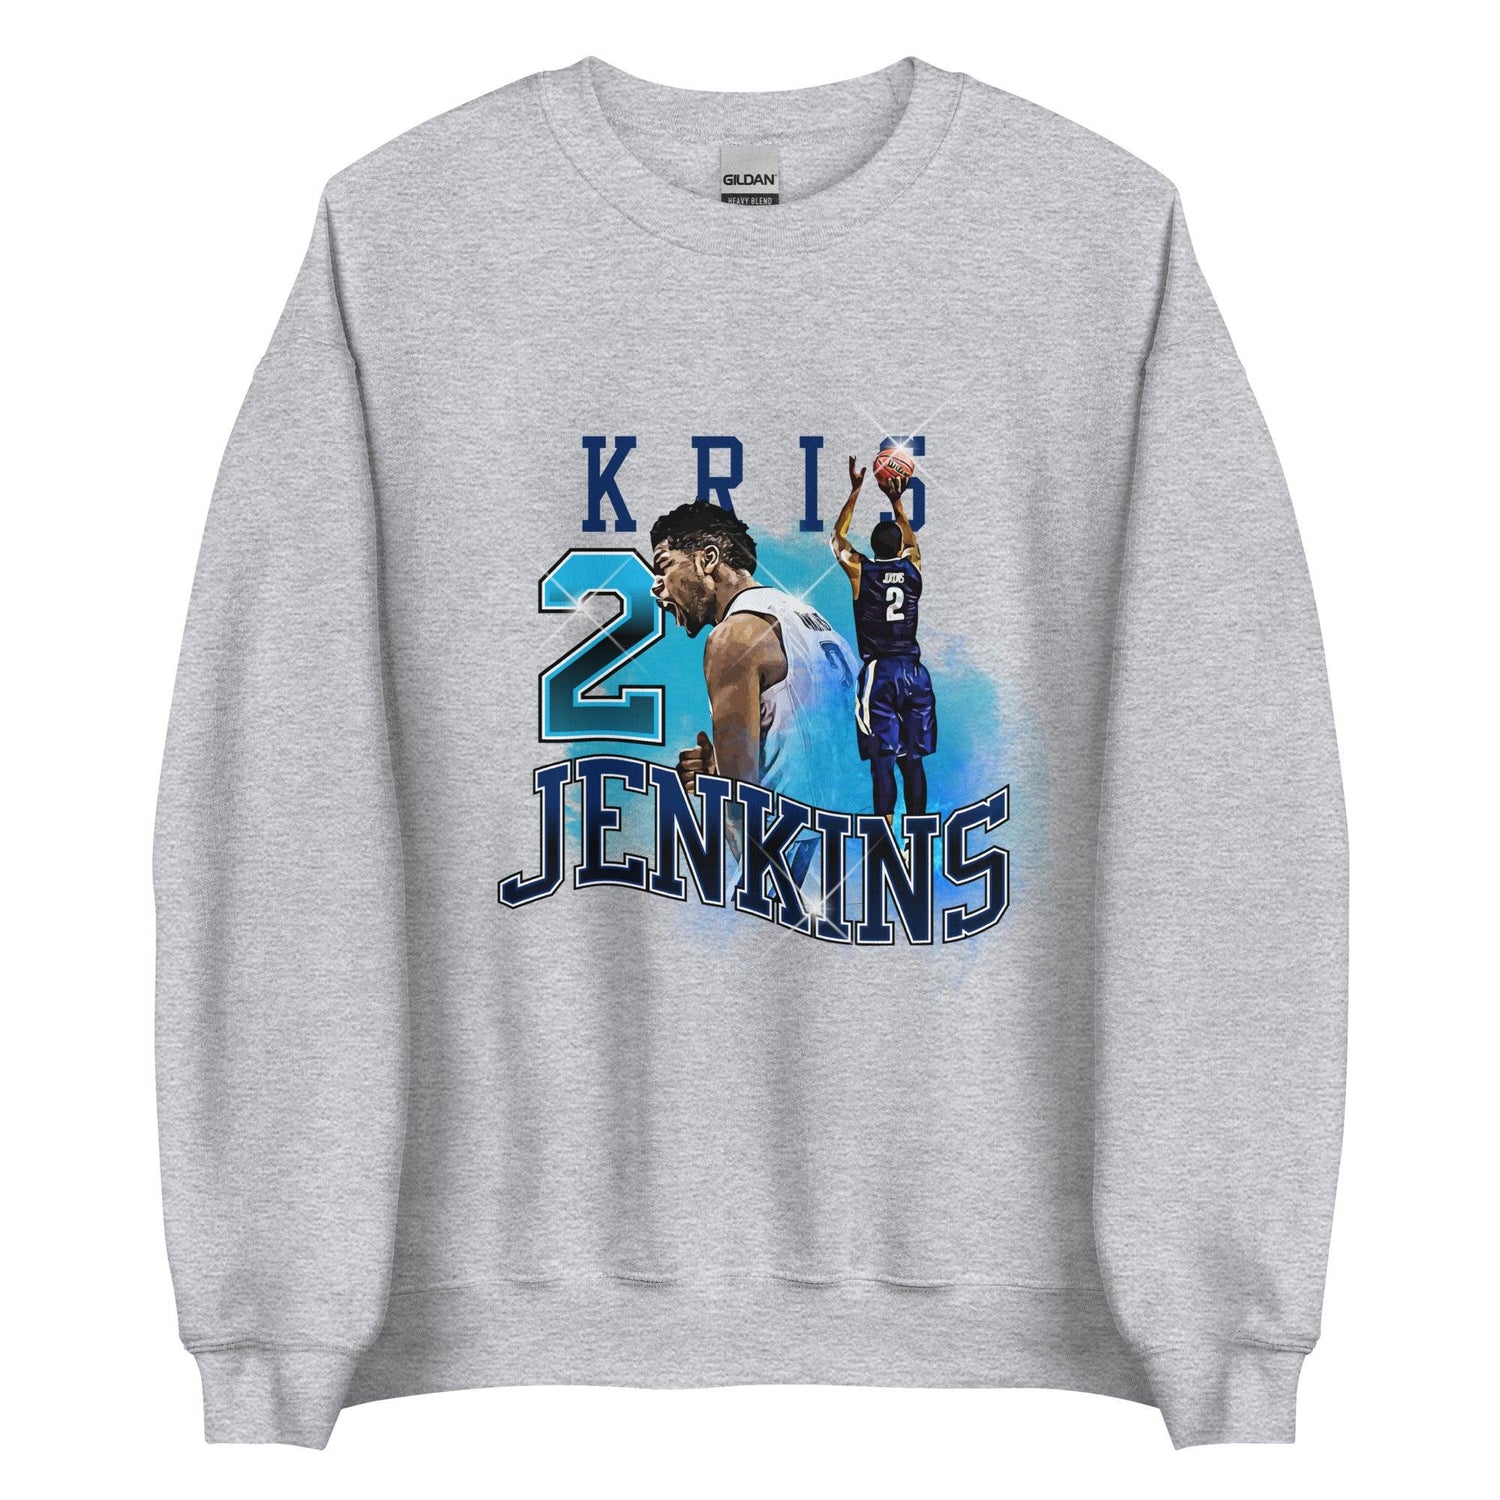 Kris Jenkins "Legacy" Sweatshirt - Fan Arch